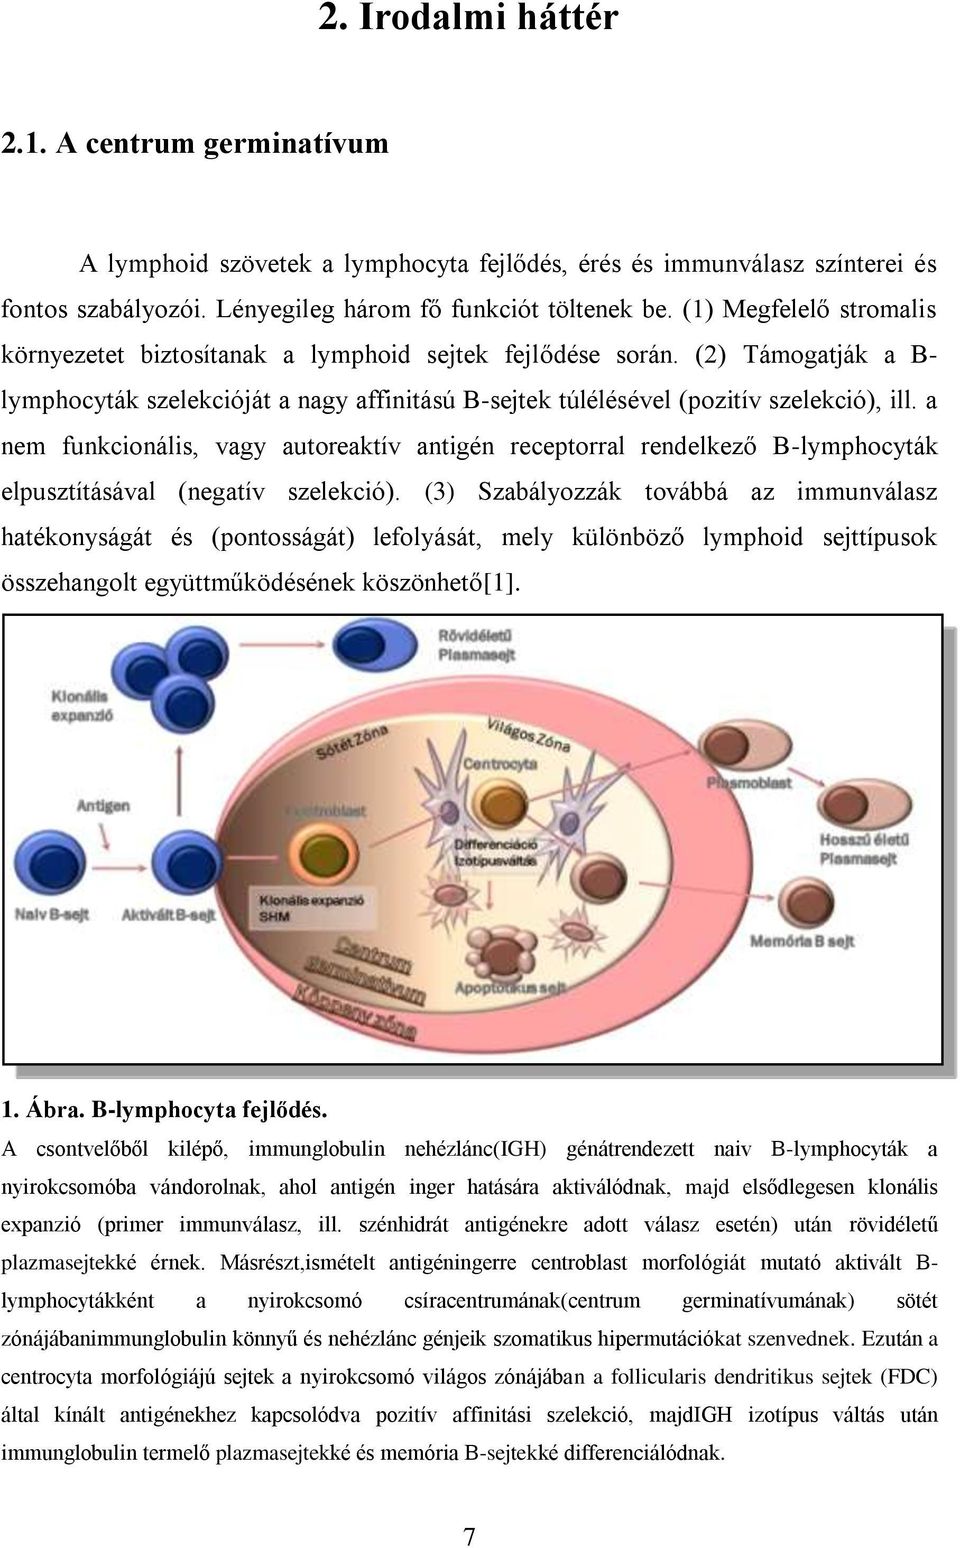 A sejtes mikrokörnyezet szerepe a follicularis lymphoma csontvelői  terjedésében - PDF Ingyenes letöltés